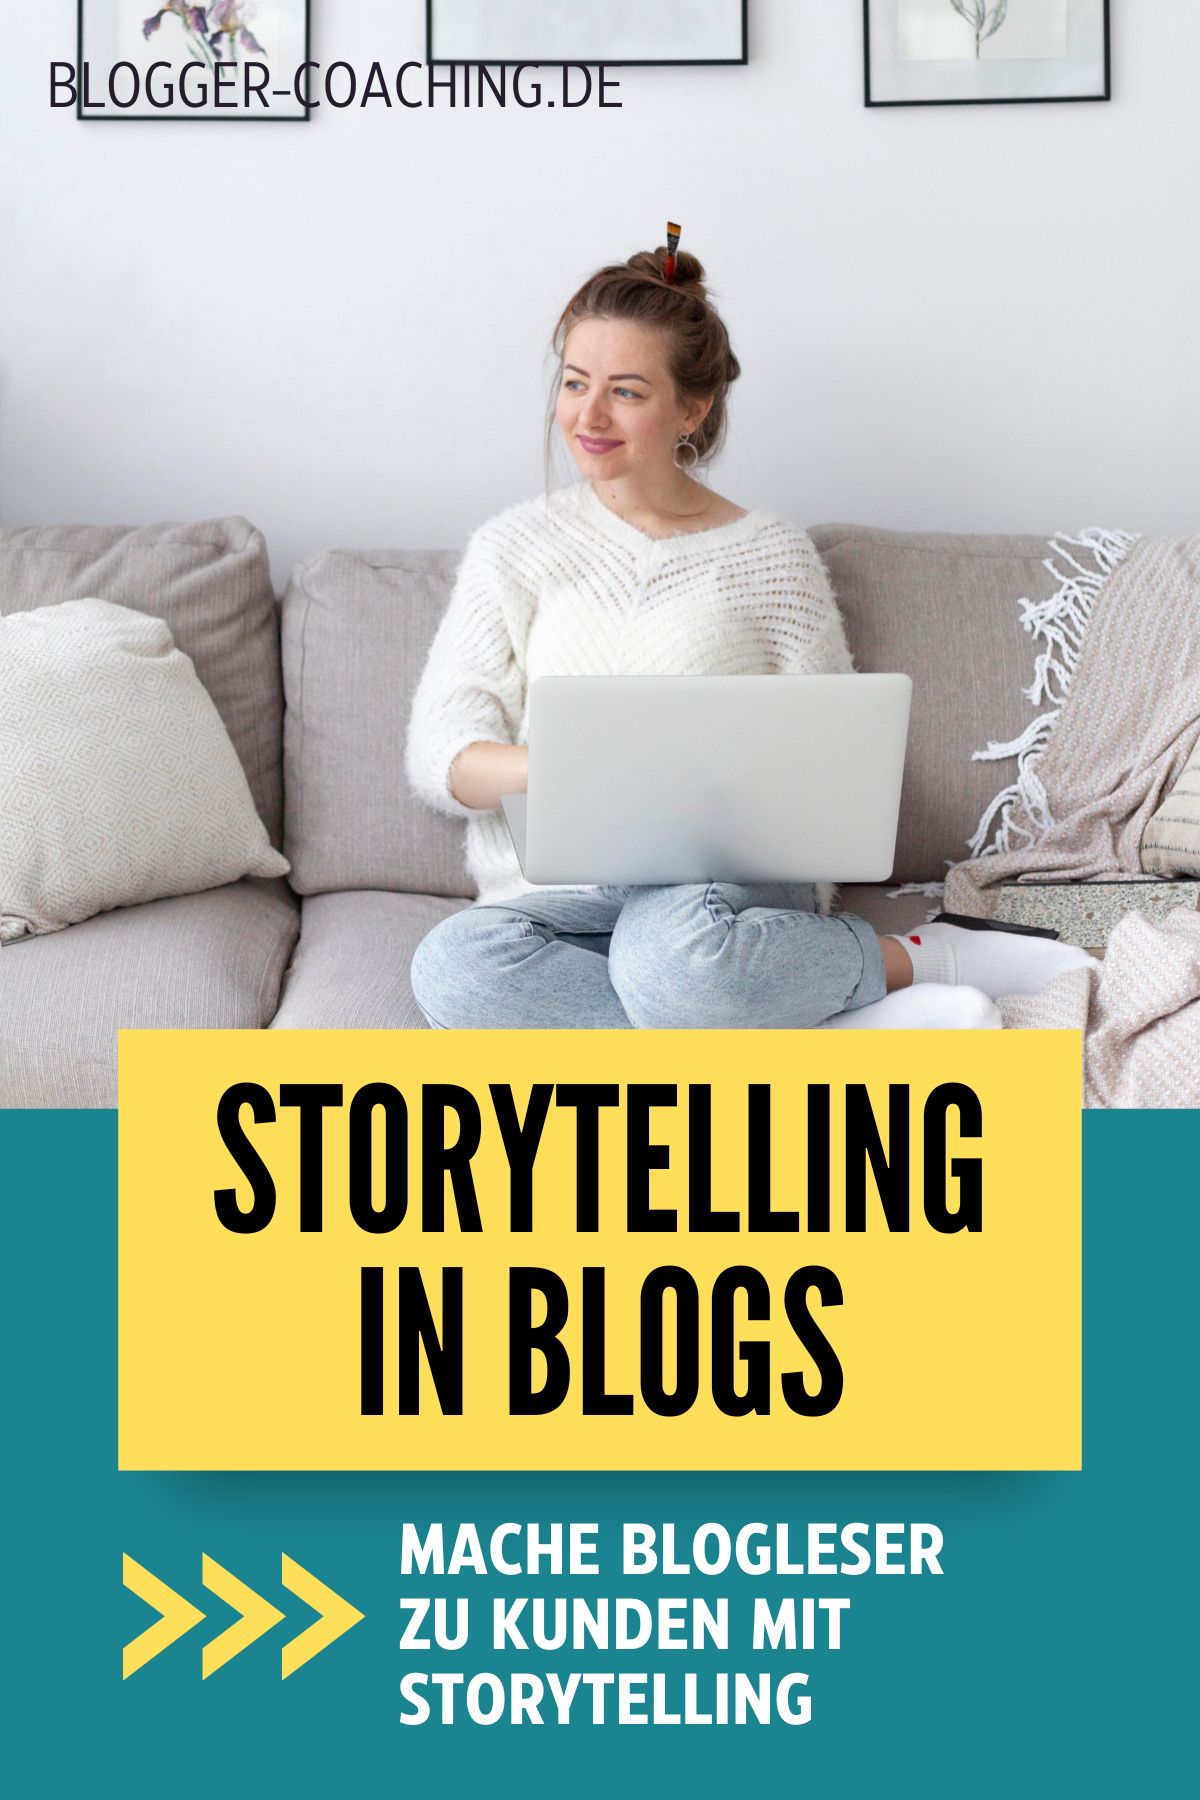 Storytelling im Business-Blogging: Wie du deine Leser mit Geschichten fesselst - Blogger-Coaching.de by Filiz Odenthal